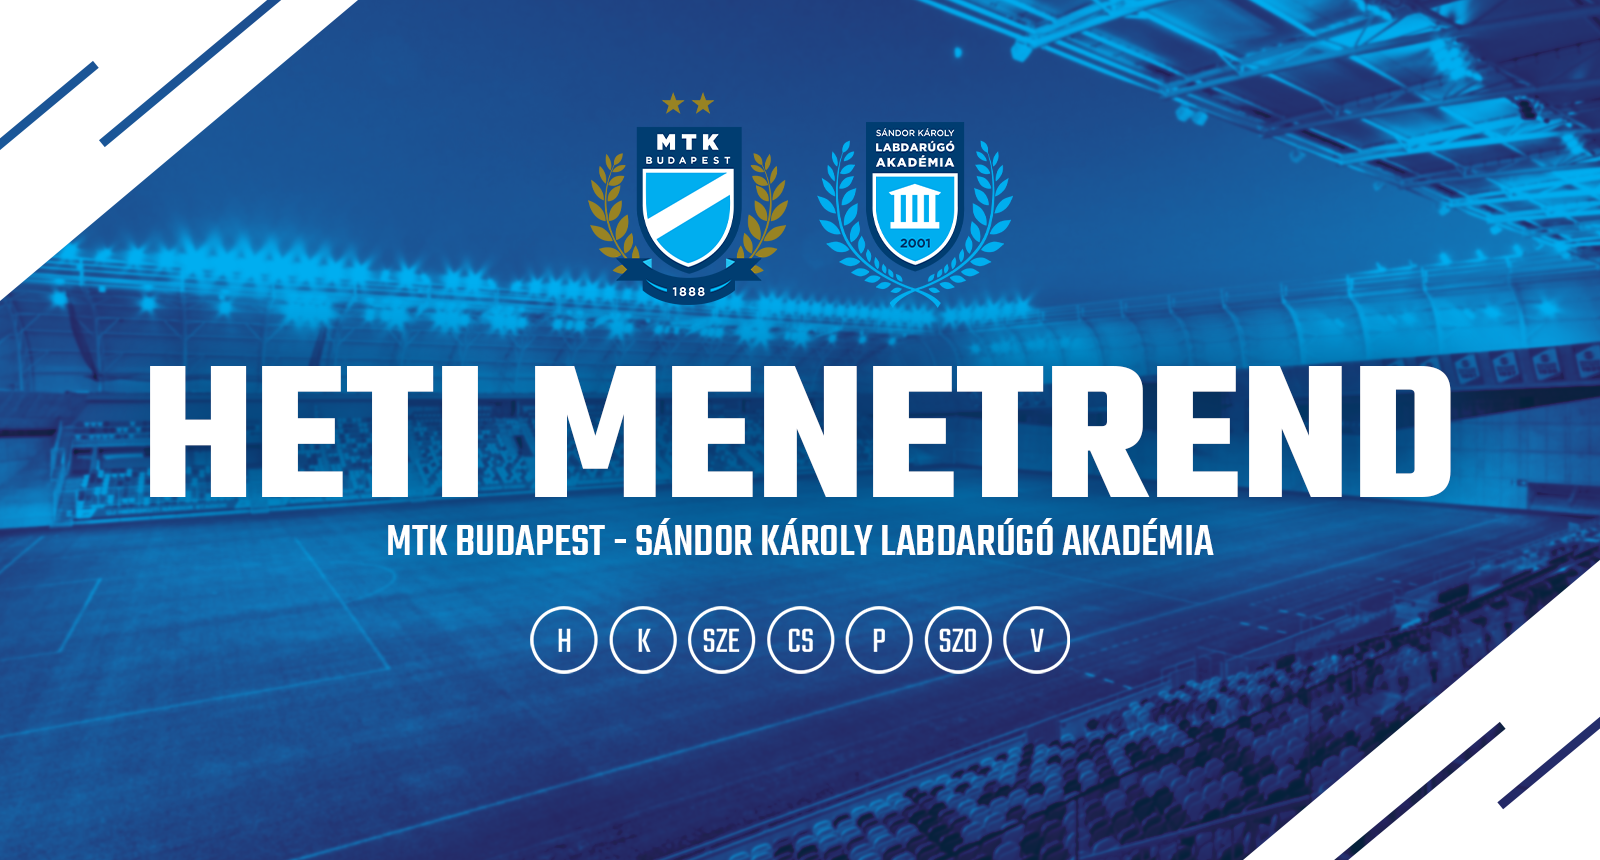 FRISSÍTVE! Az MTK Budapest és a Sándor Károly Labdarúgó Akadémia csapatainak menetrendje szeptember 4-10. között